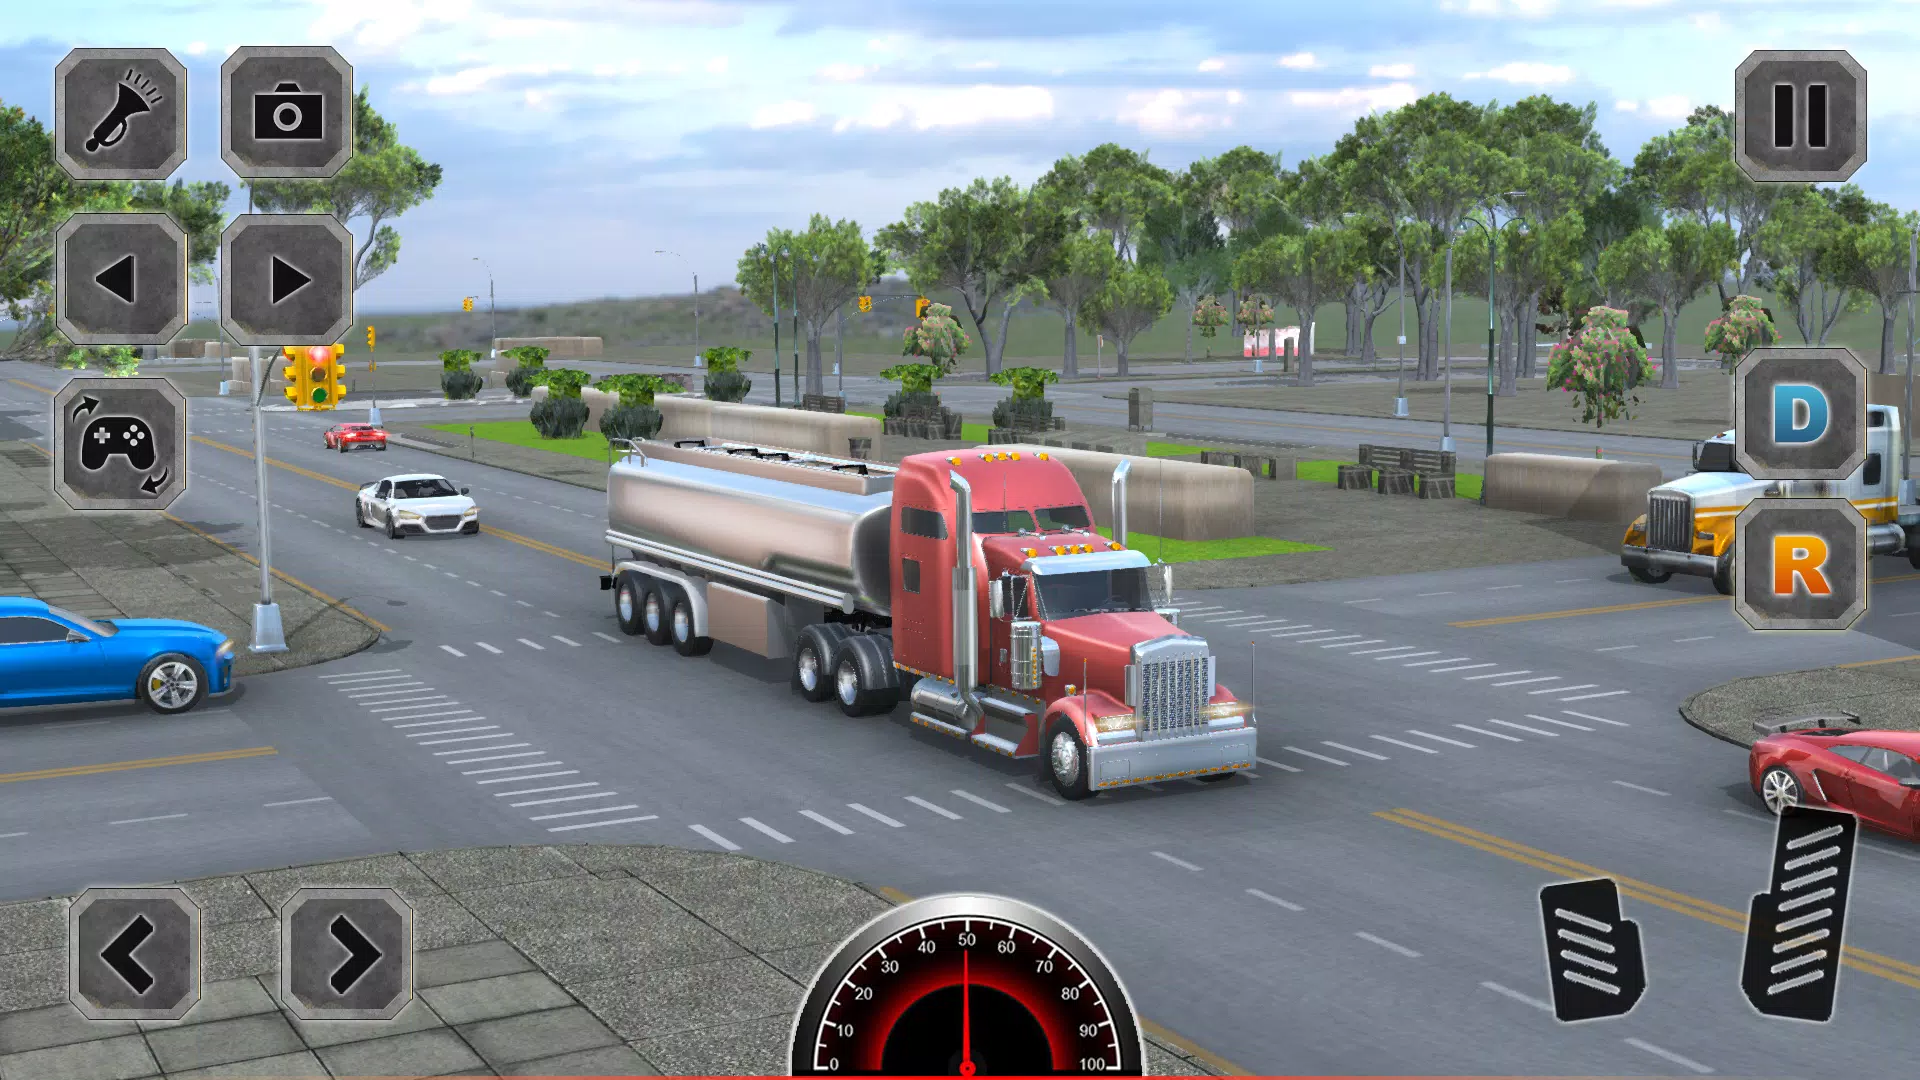 Jogo de Estacionamento de Caminhão - 3D Truck Driving 2016 